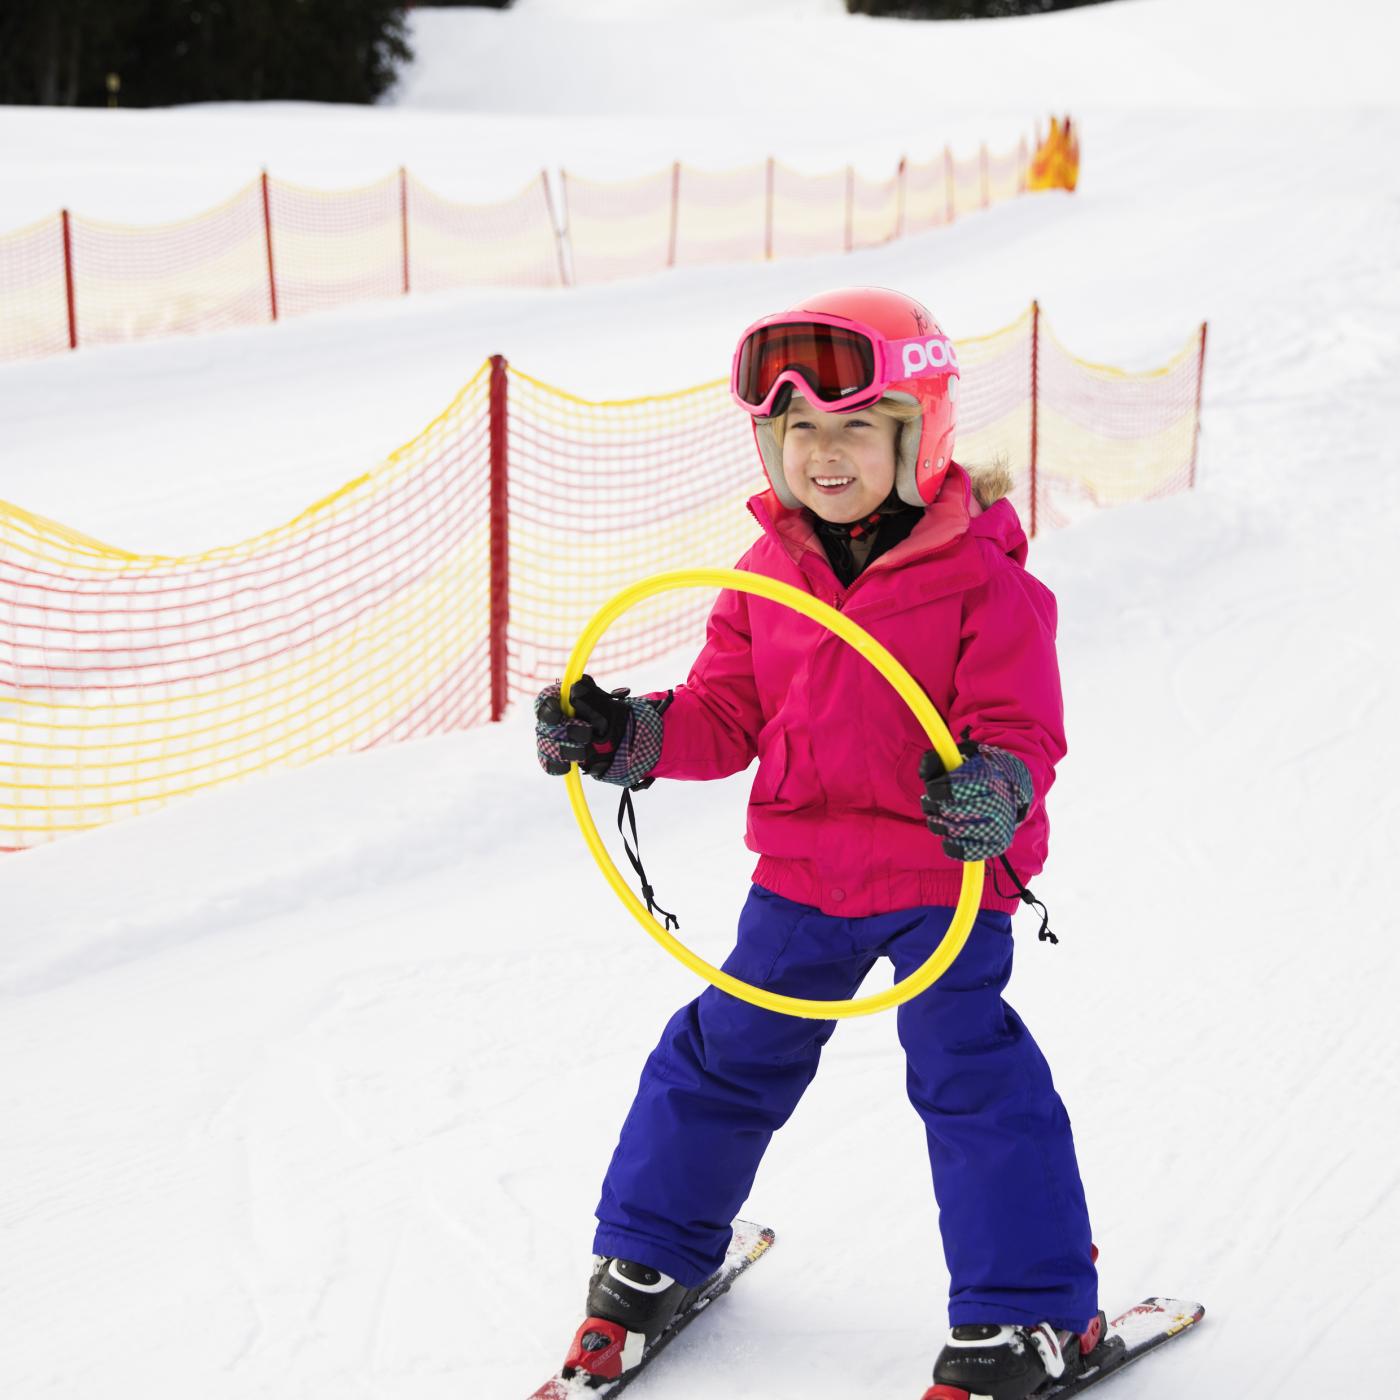 Kind beim Ski fahren